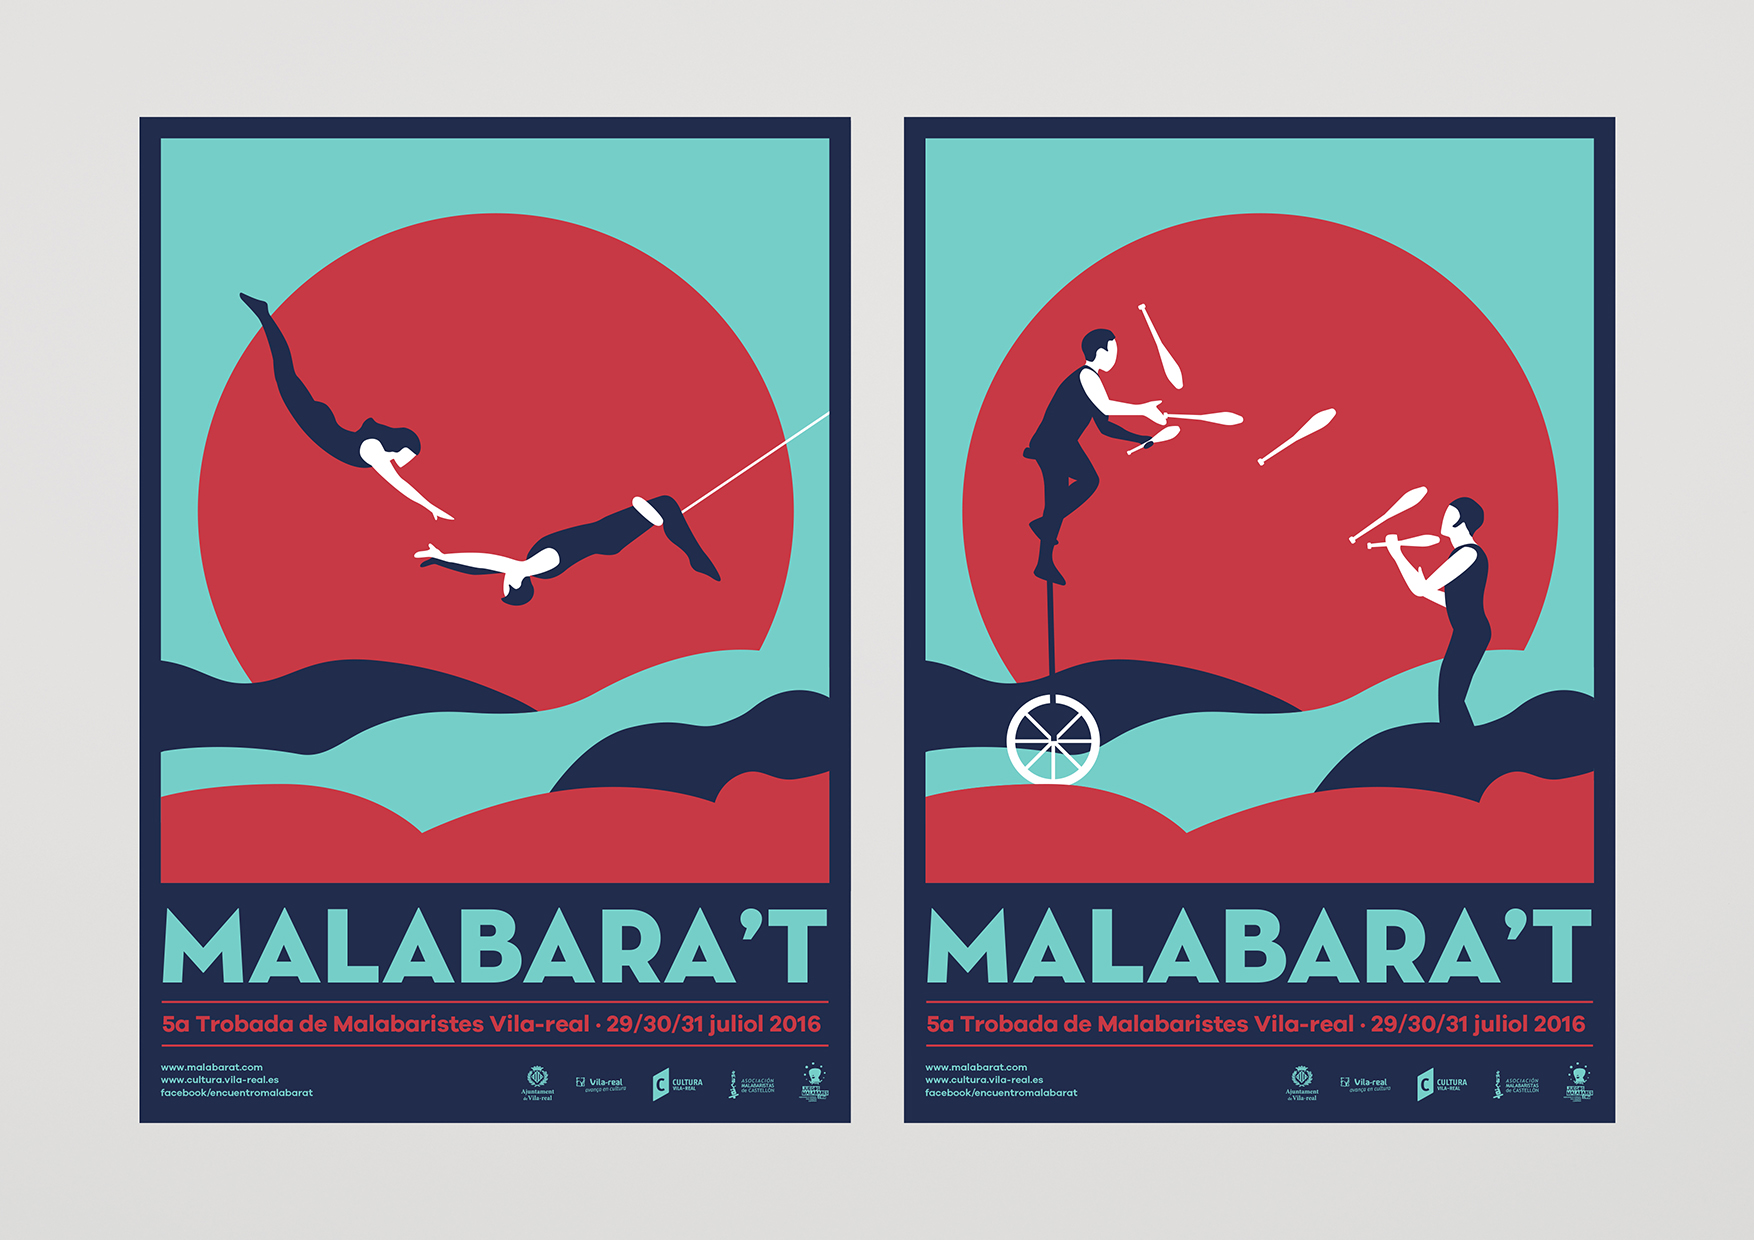 Malabara't by Yinsen - Creative Work